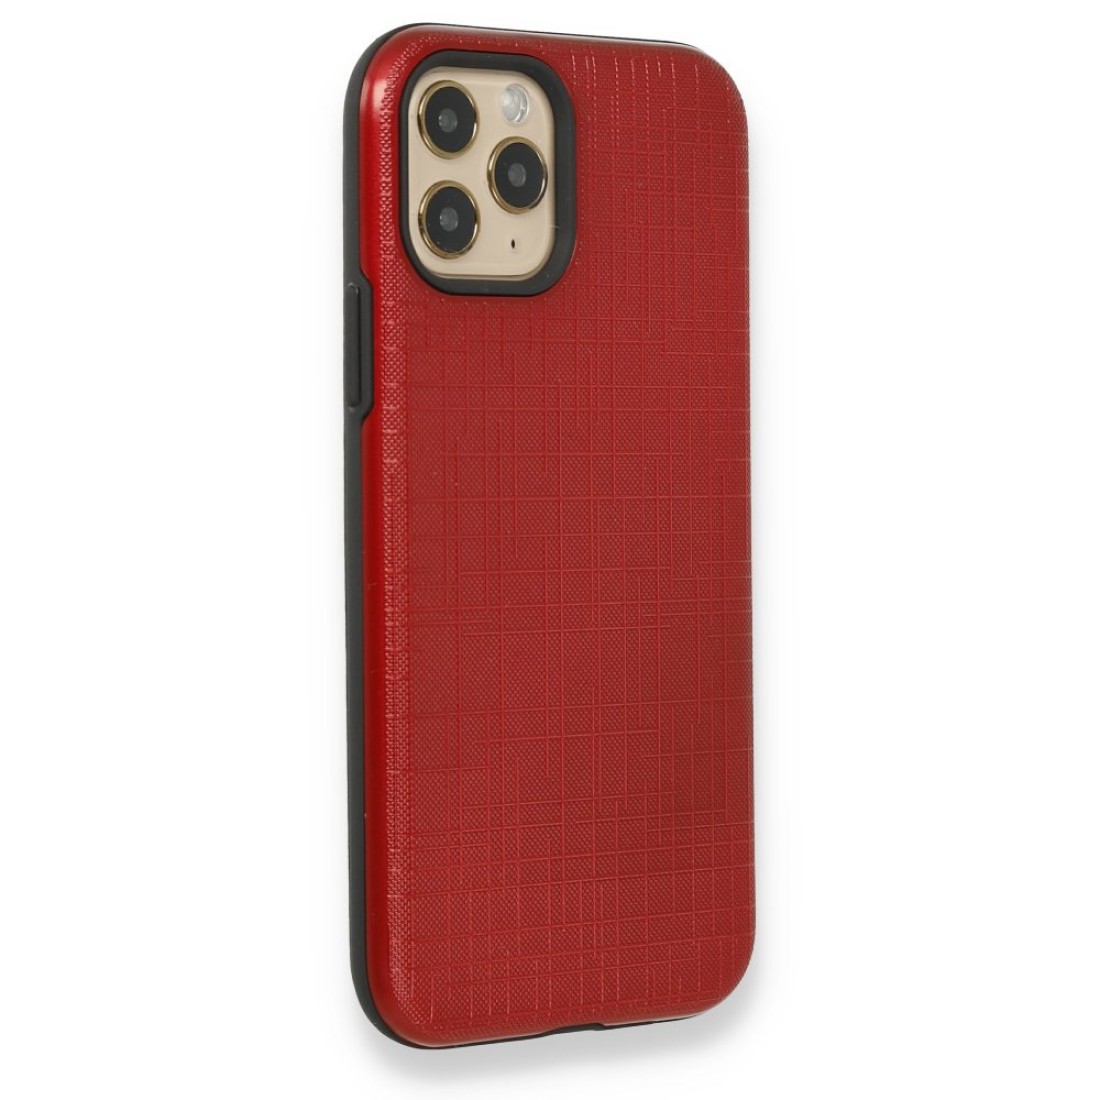 Apple iPhone 11 Pro Kılıf YouYou Silikon Kapak - Kırmızı